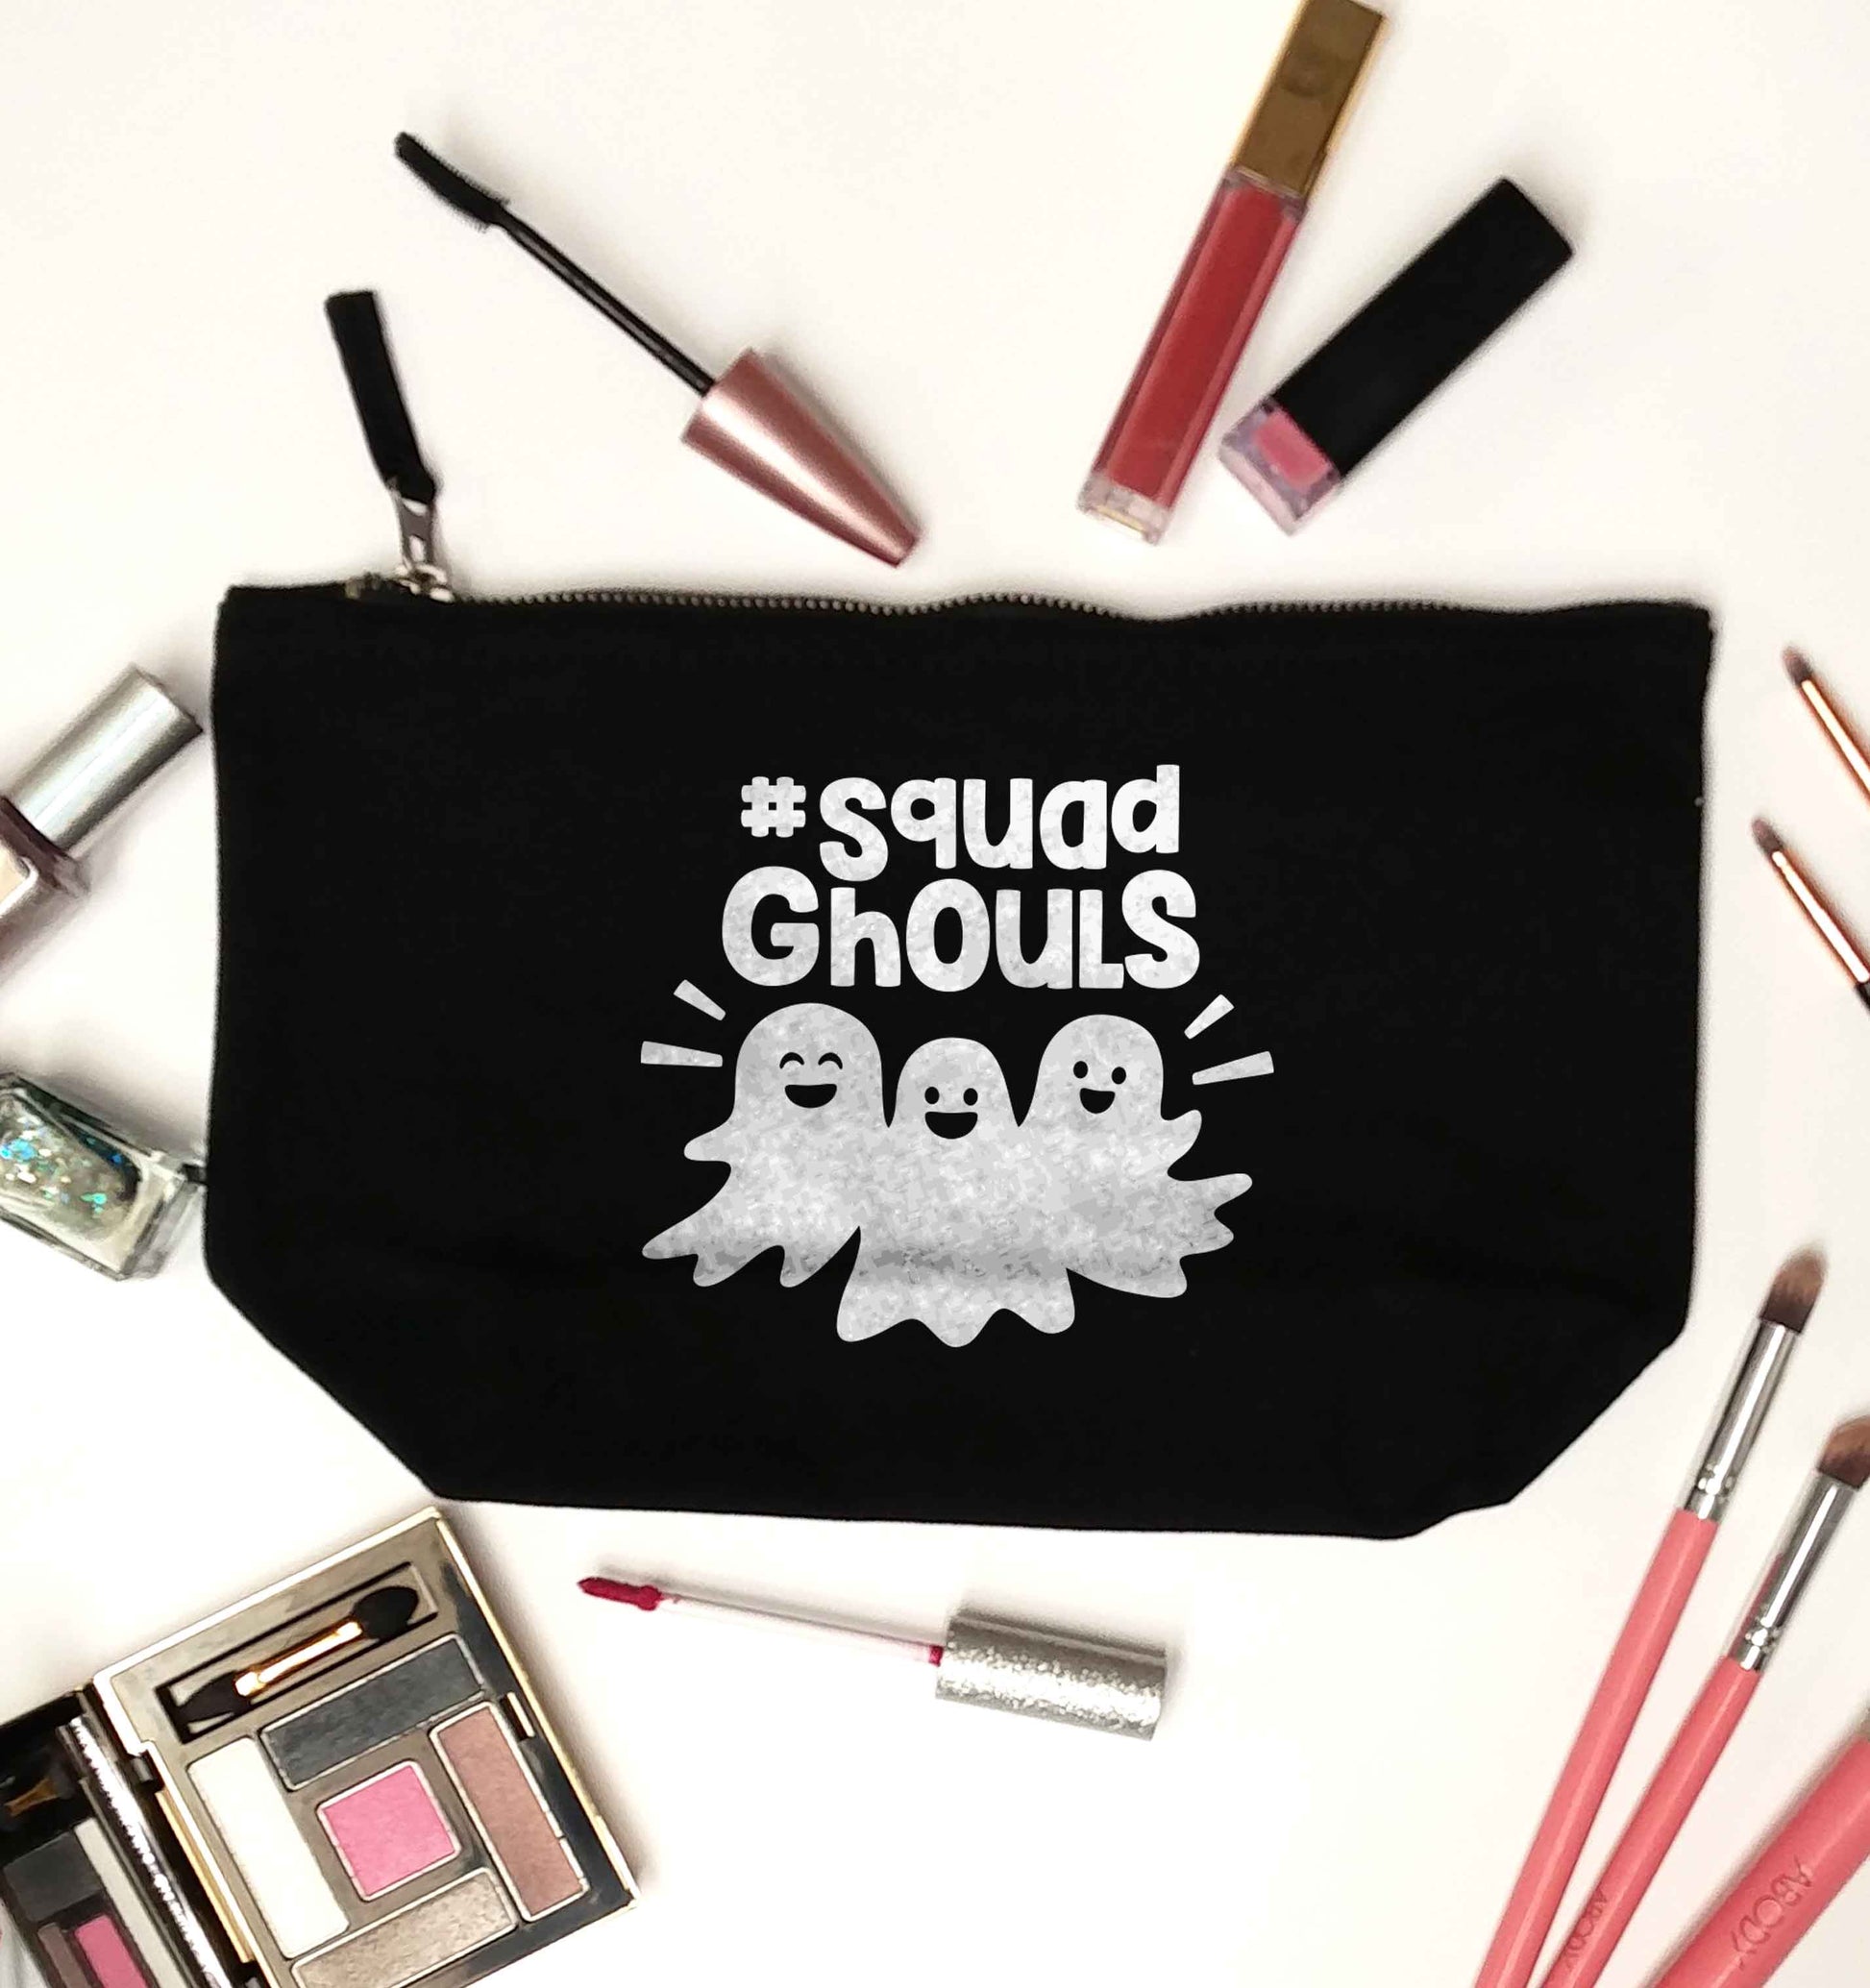 Squad ghouls Kit black makeup bag